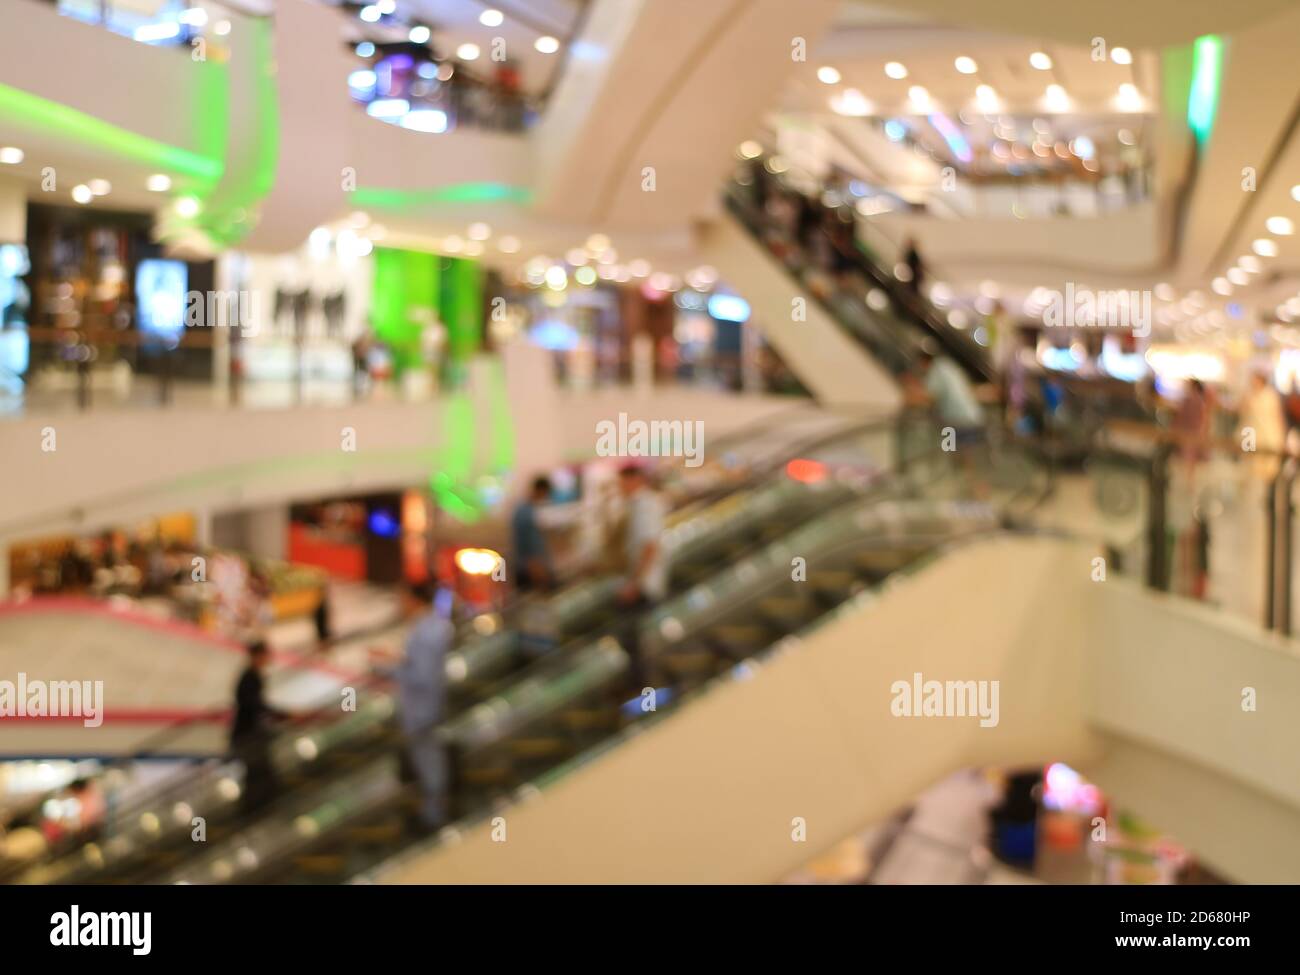 Astratto centro commerciale offuscato con persone sulle scale mobili Foto Stock